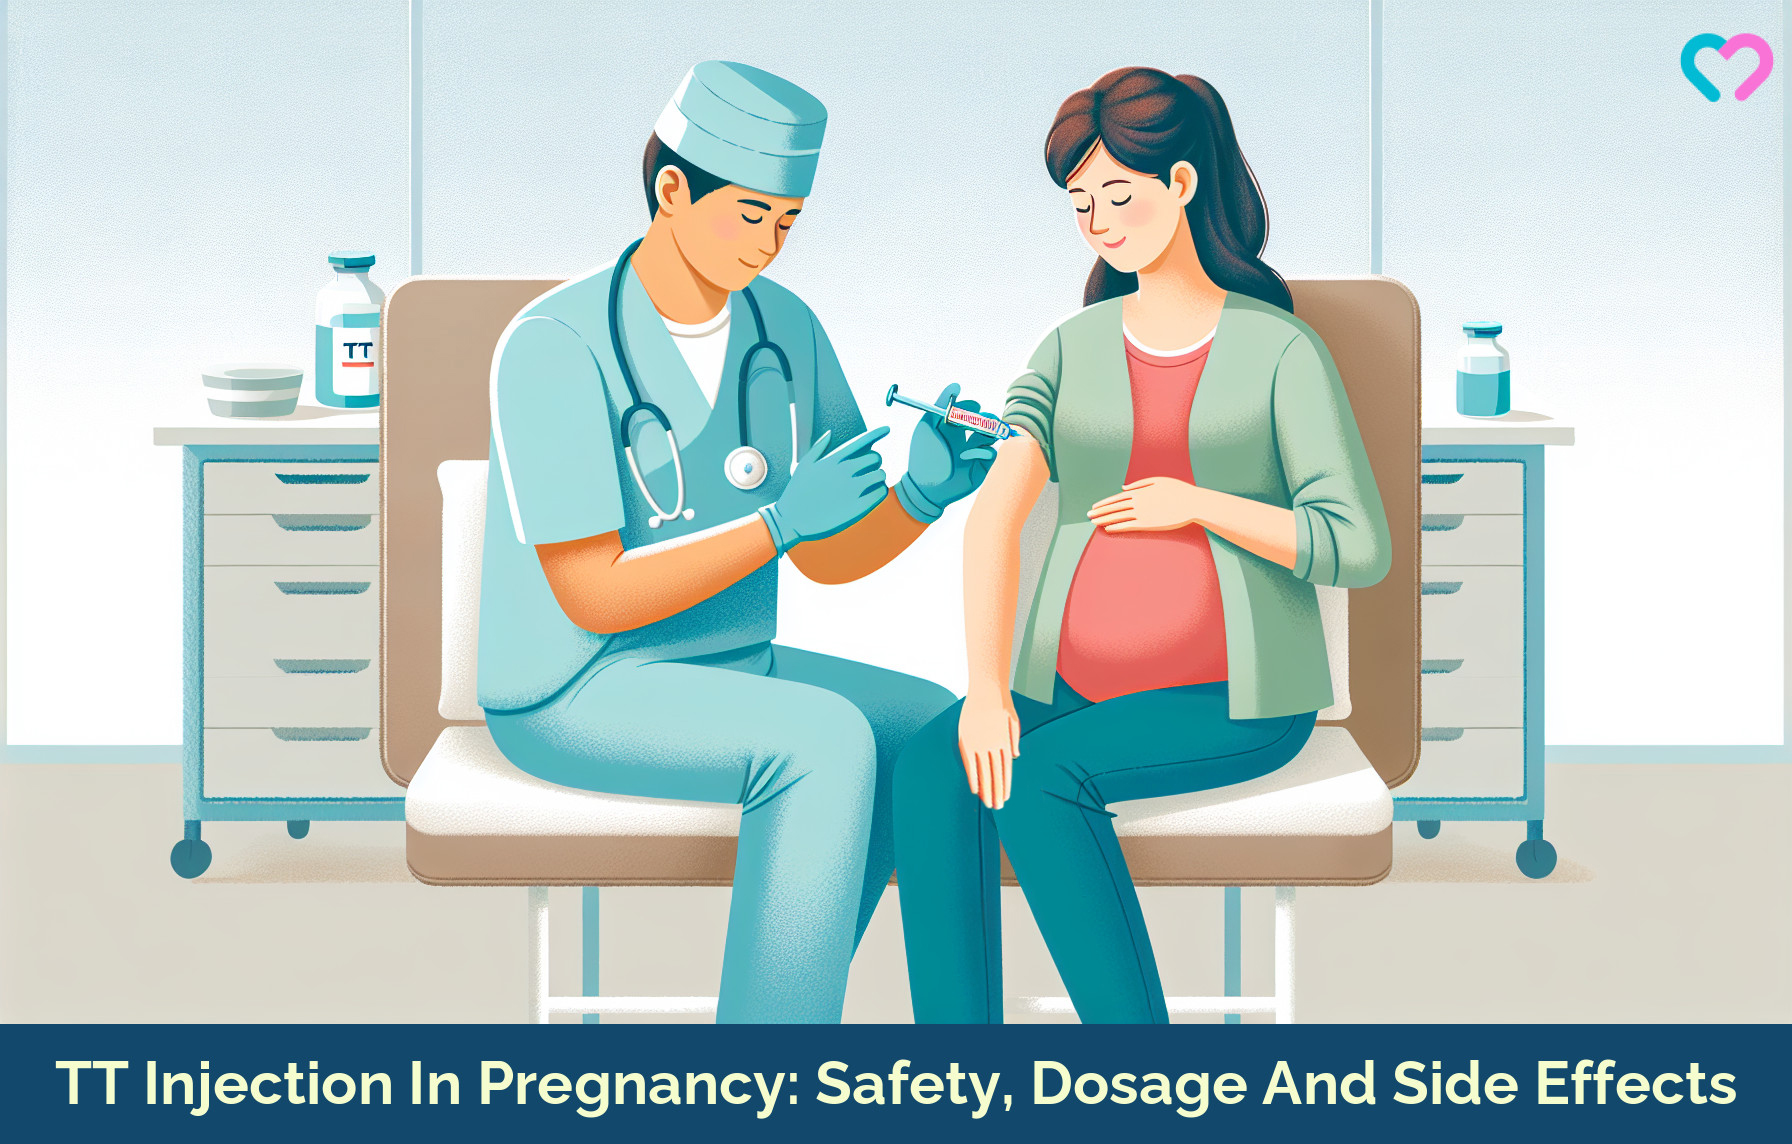 Tetanus Toxoid Vaccination During Pregnancy_illustration